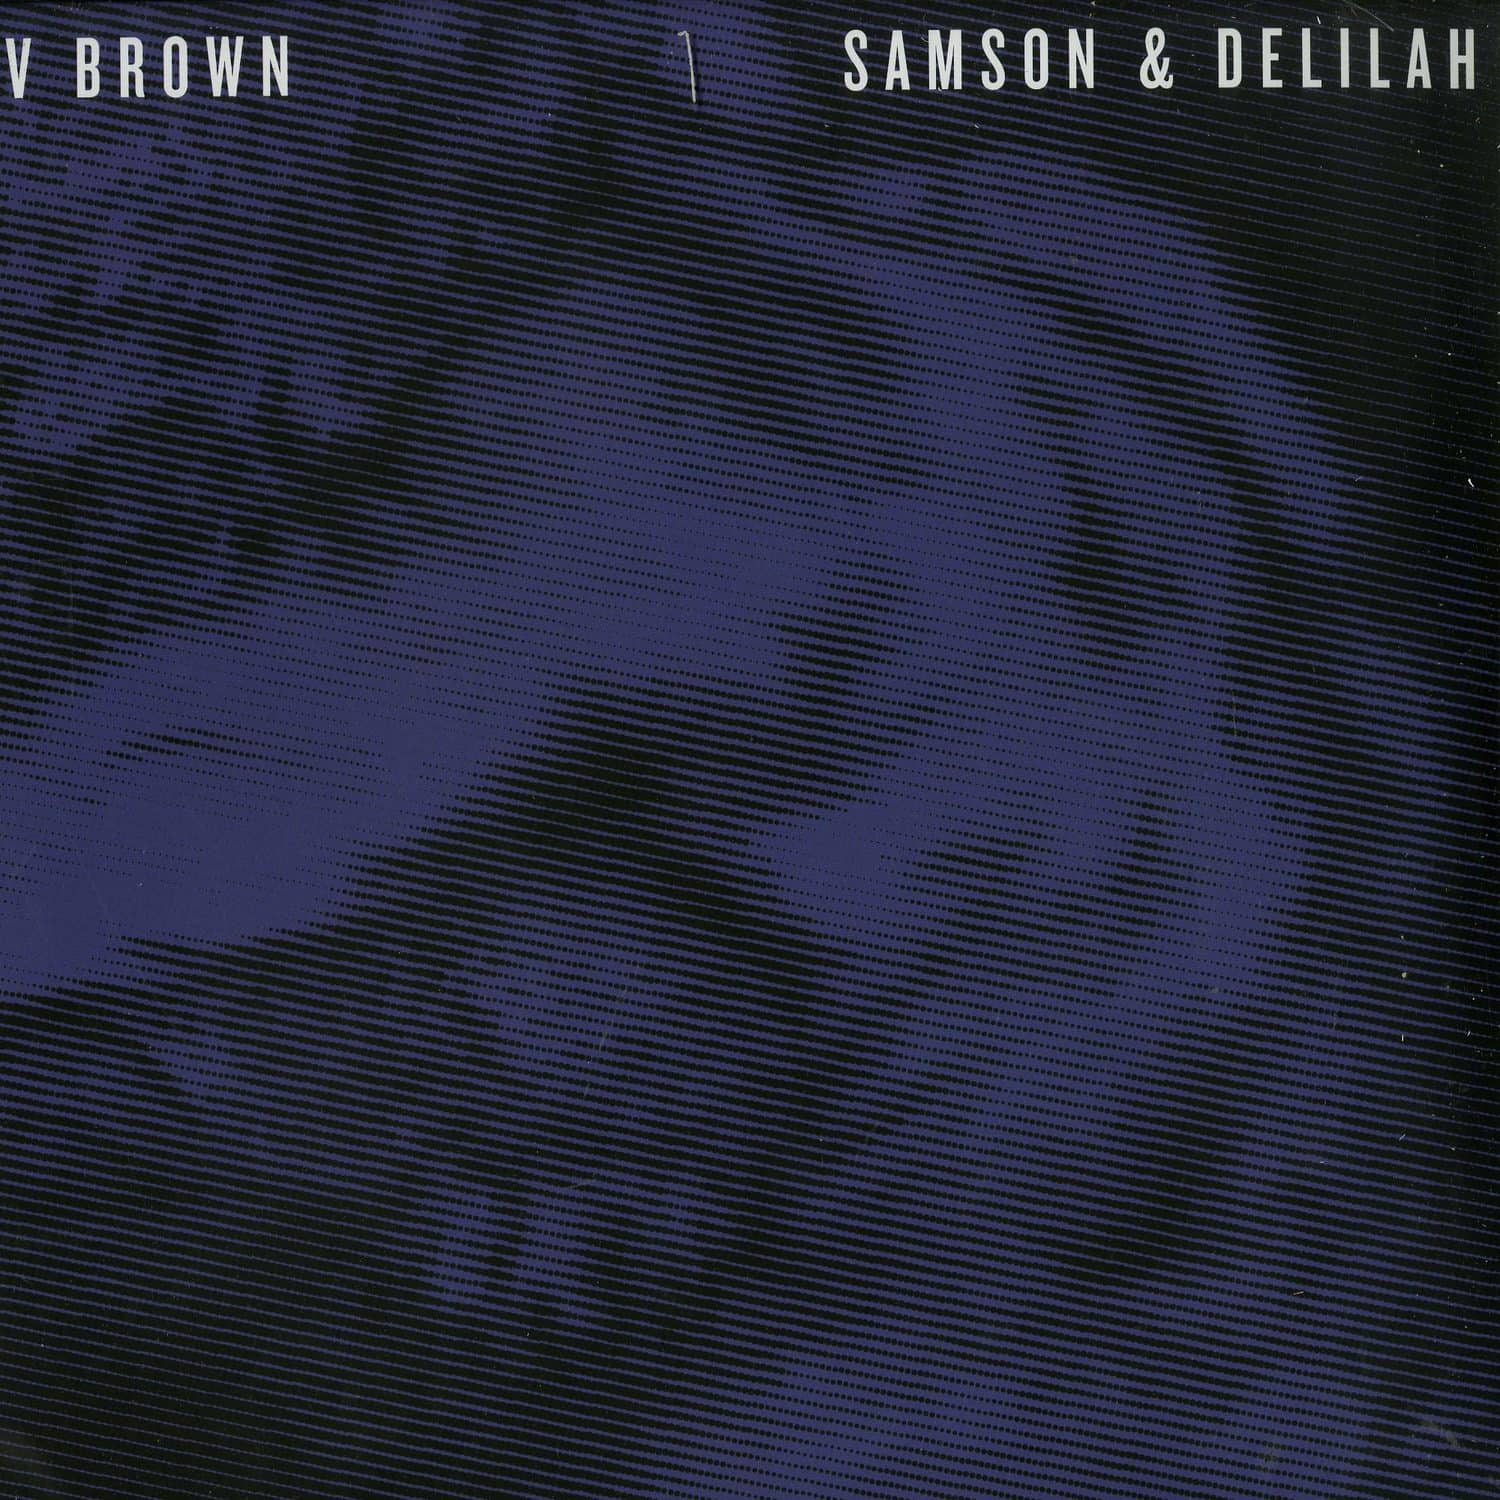 VV Brown - SAMSON & DELILAH 